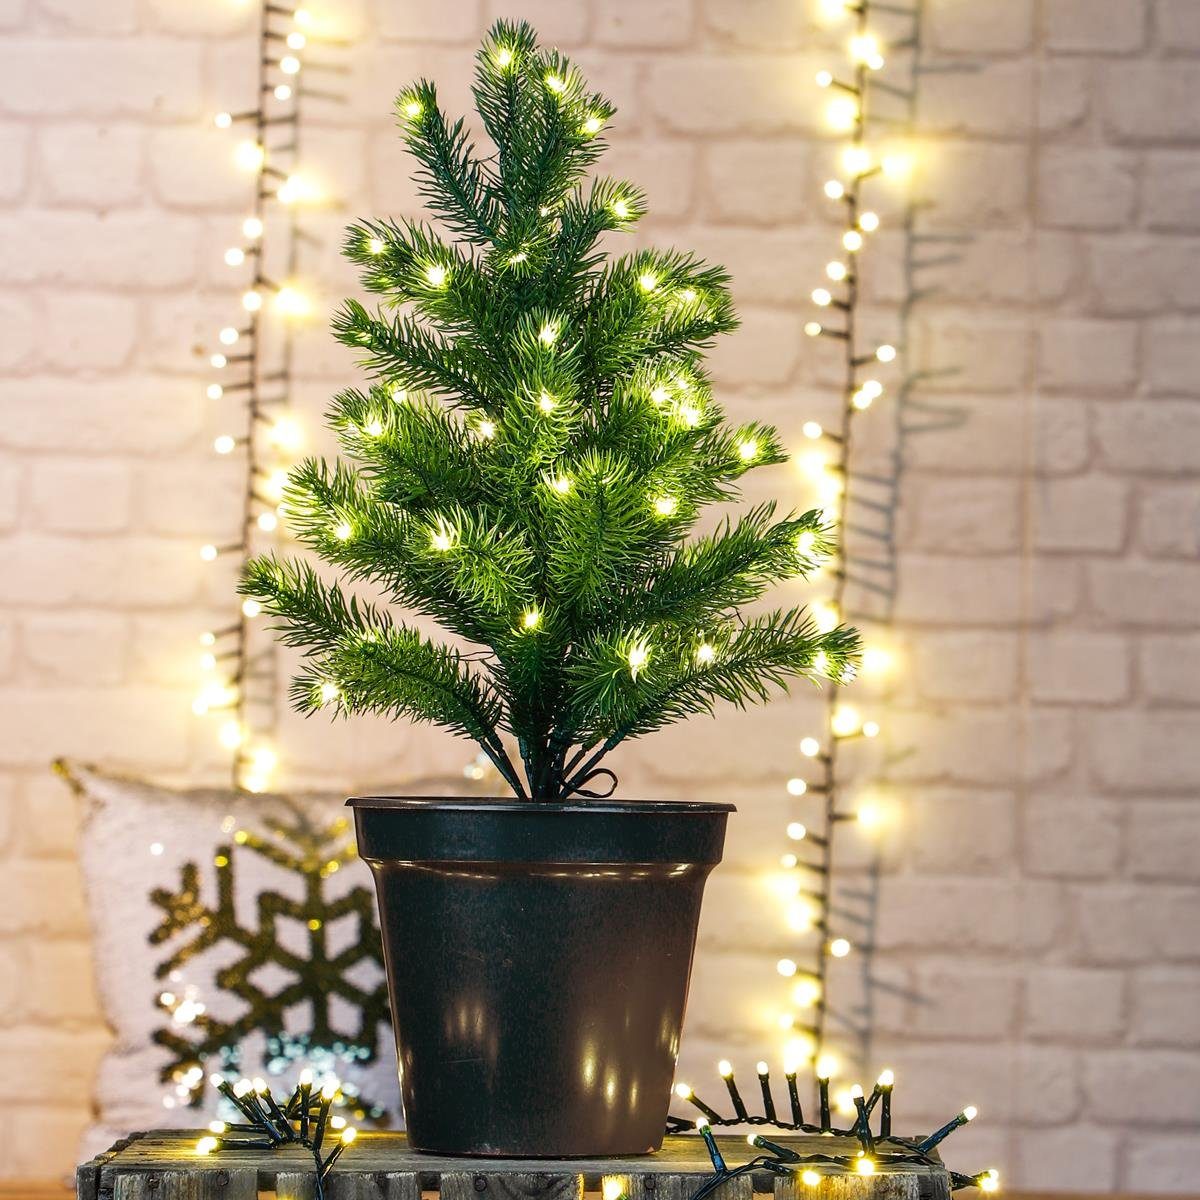 Timer, LED MARELIDA Classic, (2100K Tischbaum Baum bis LED 3000K) Batterie Tannenbaum Blumentopf warmweiß LED Weihnachtsbaum